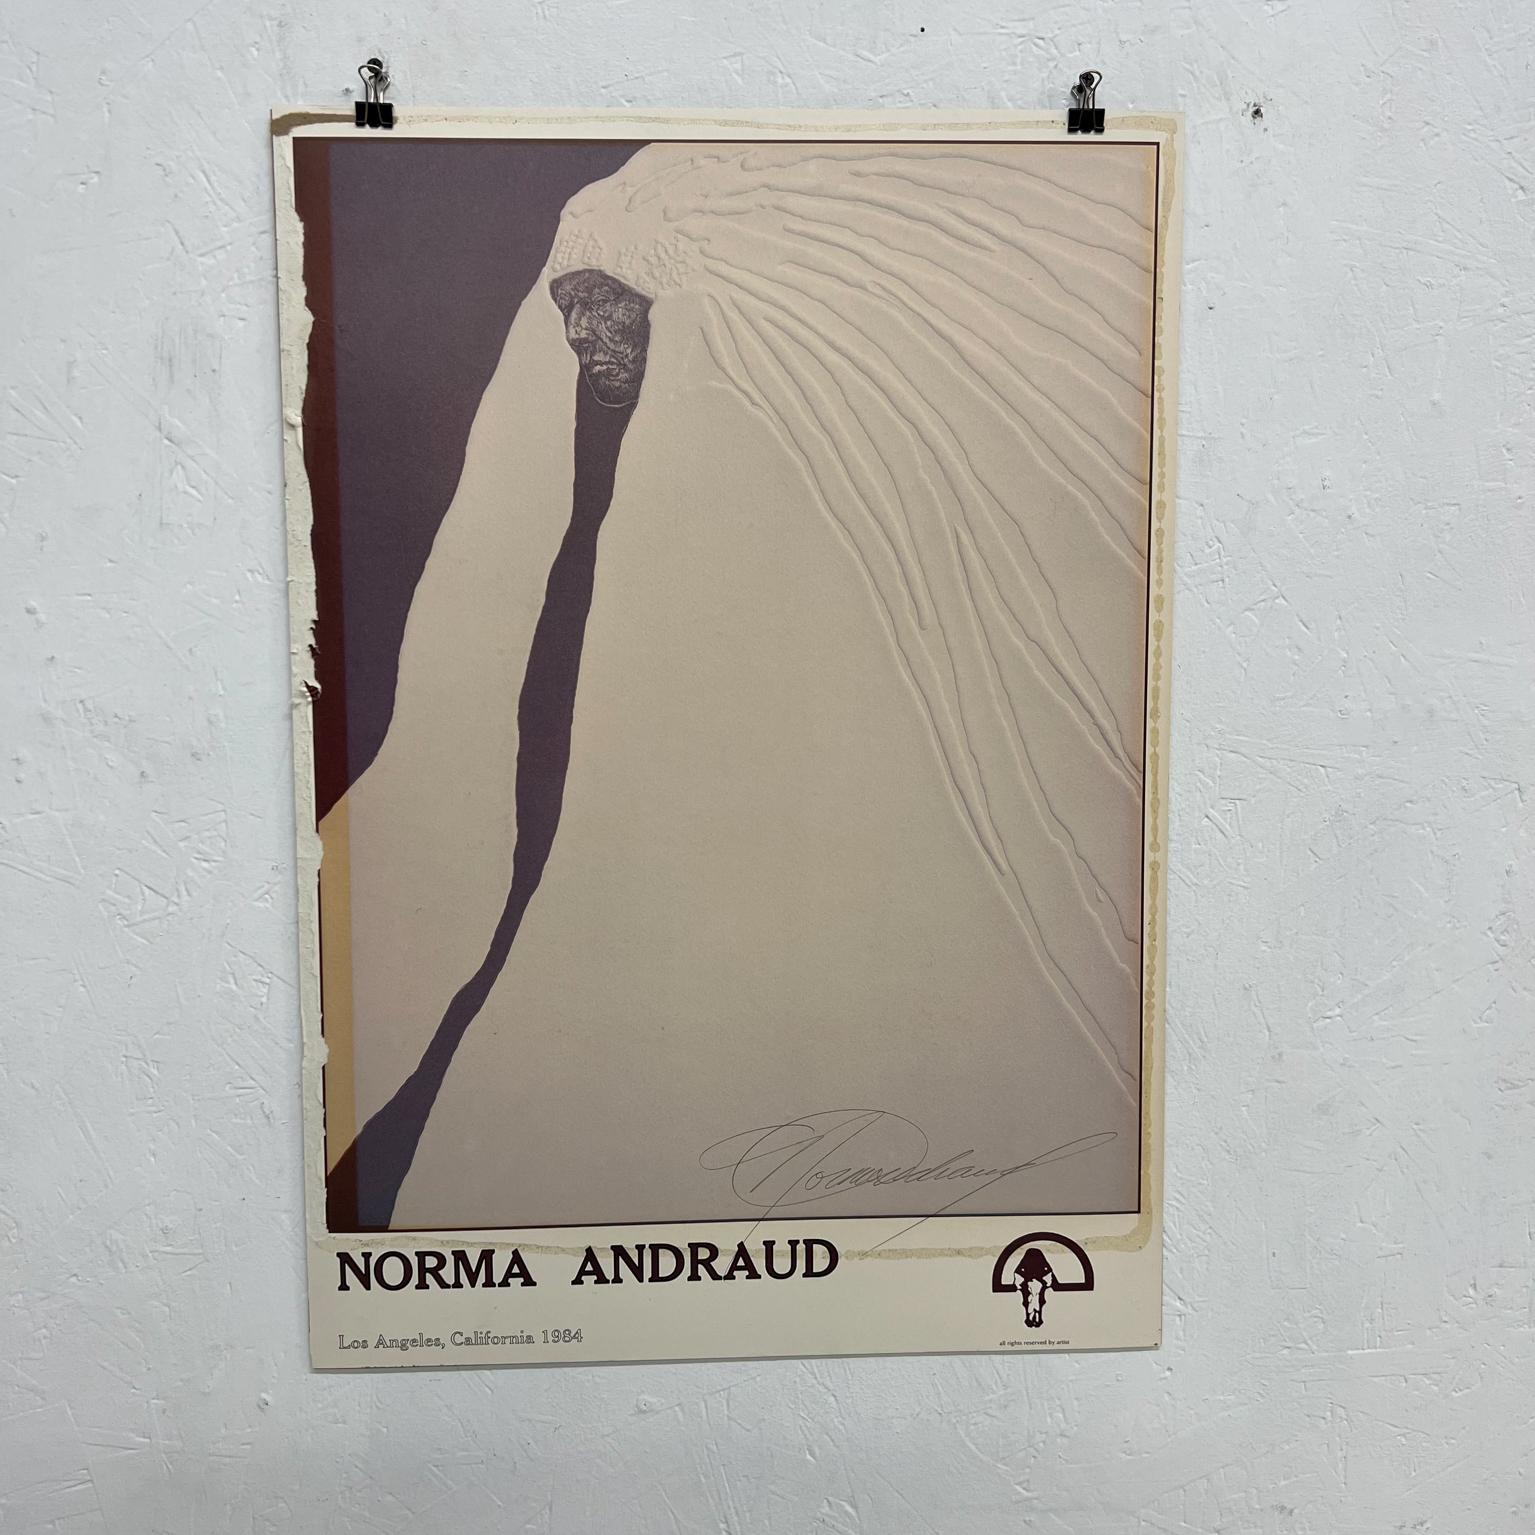 1984 Norma Andraud Modern Art Los Angeles CA beaucoup de plumes poster gaufré 
Signature
19 x 27
État vintage original non restauré.
Voir les images fournies.
 